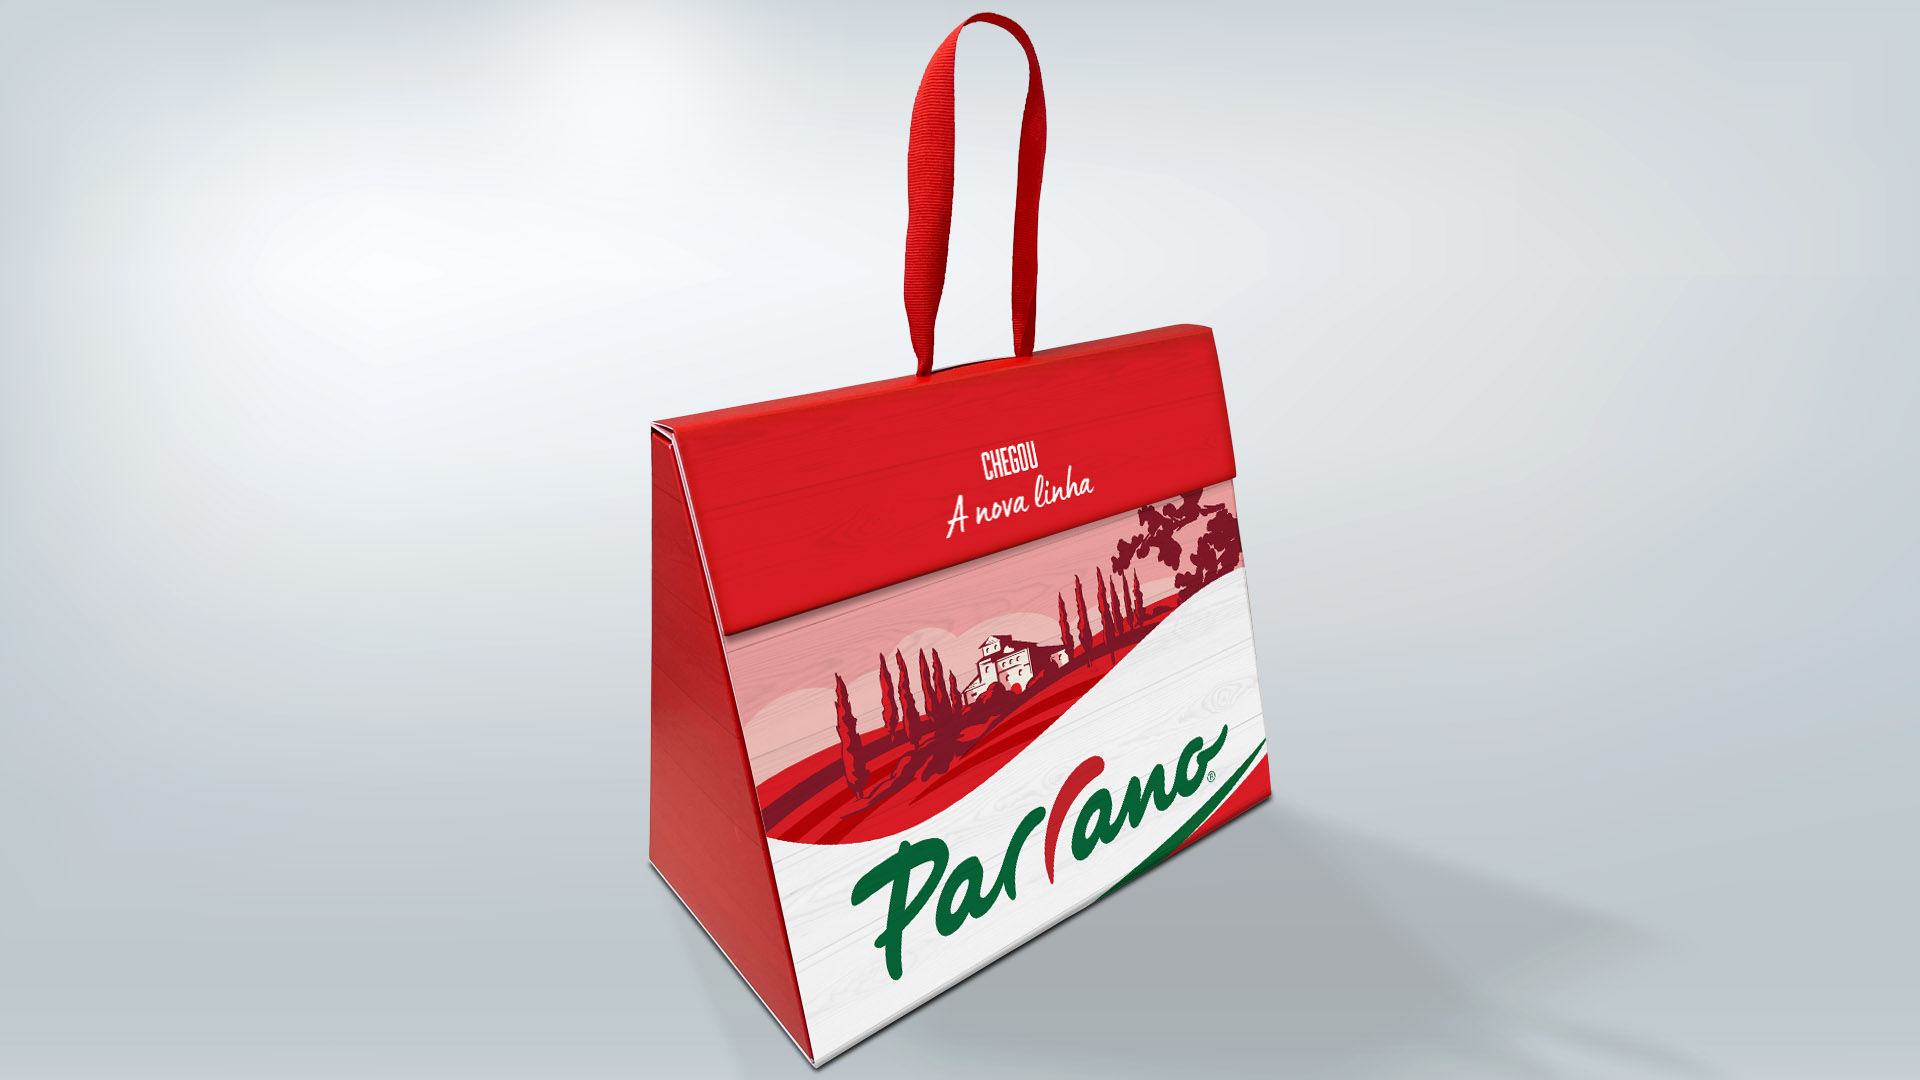 Imagem do sales kit da campanha de lançamento da marca Parrano no Brasil desenvolvida pelo Estúdio E | Agência de Comunicação